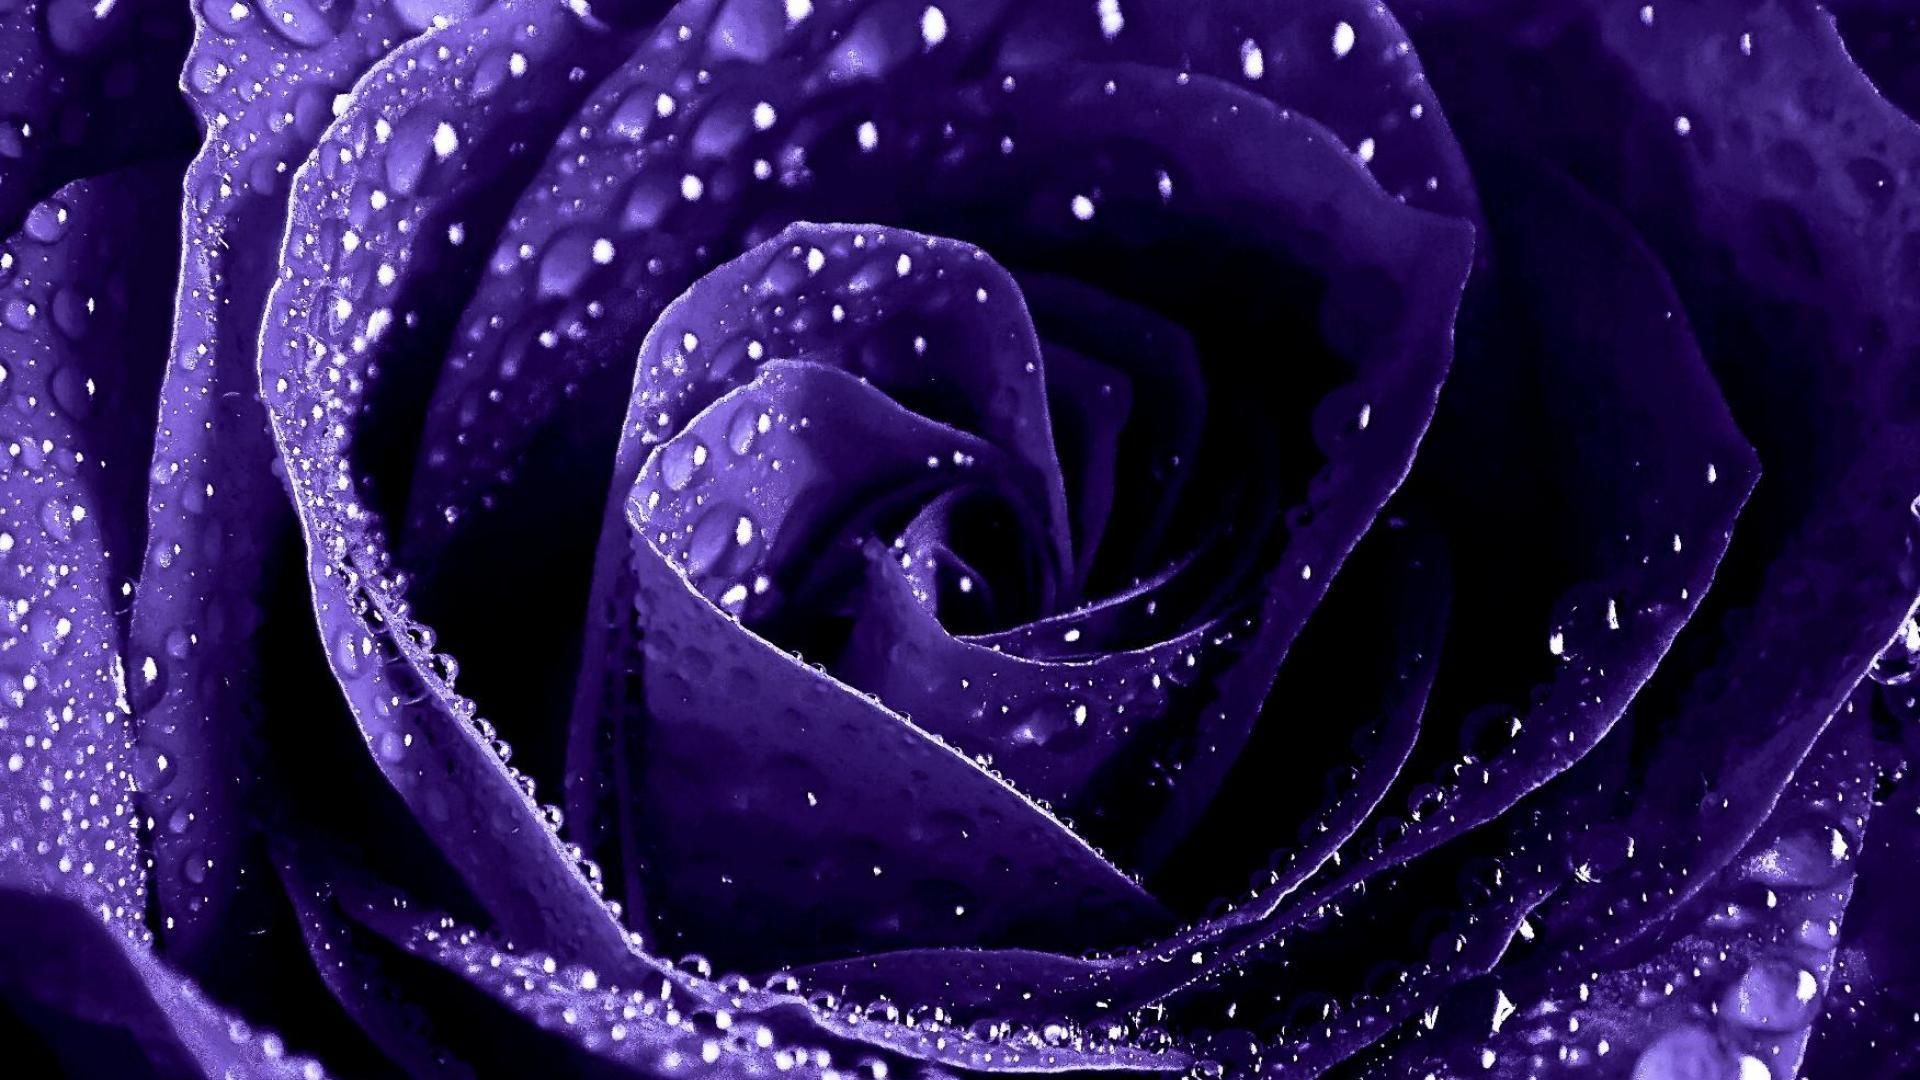 Đắm mình trong thế giới tuyệt vời của những bông hoa hồng tím qua bộ sưu tập hình nền độc đáo từ chúng tôi. Mỗi tấm hình đều đầy sức sống và màu sắc tươi sáng, hứa hẹn sẽ làm cho màn hình của bạn trở nên hoàn hảo hơn.